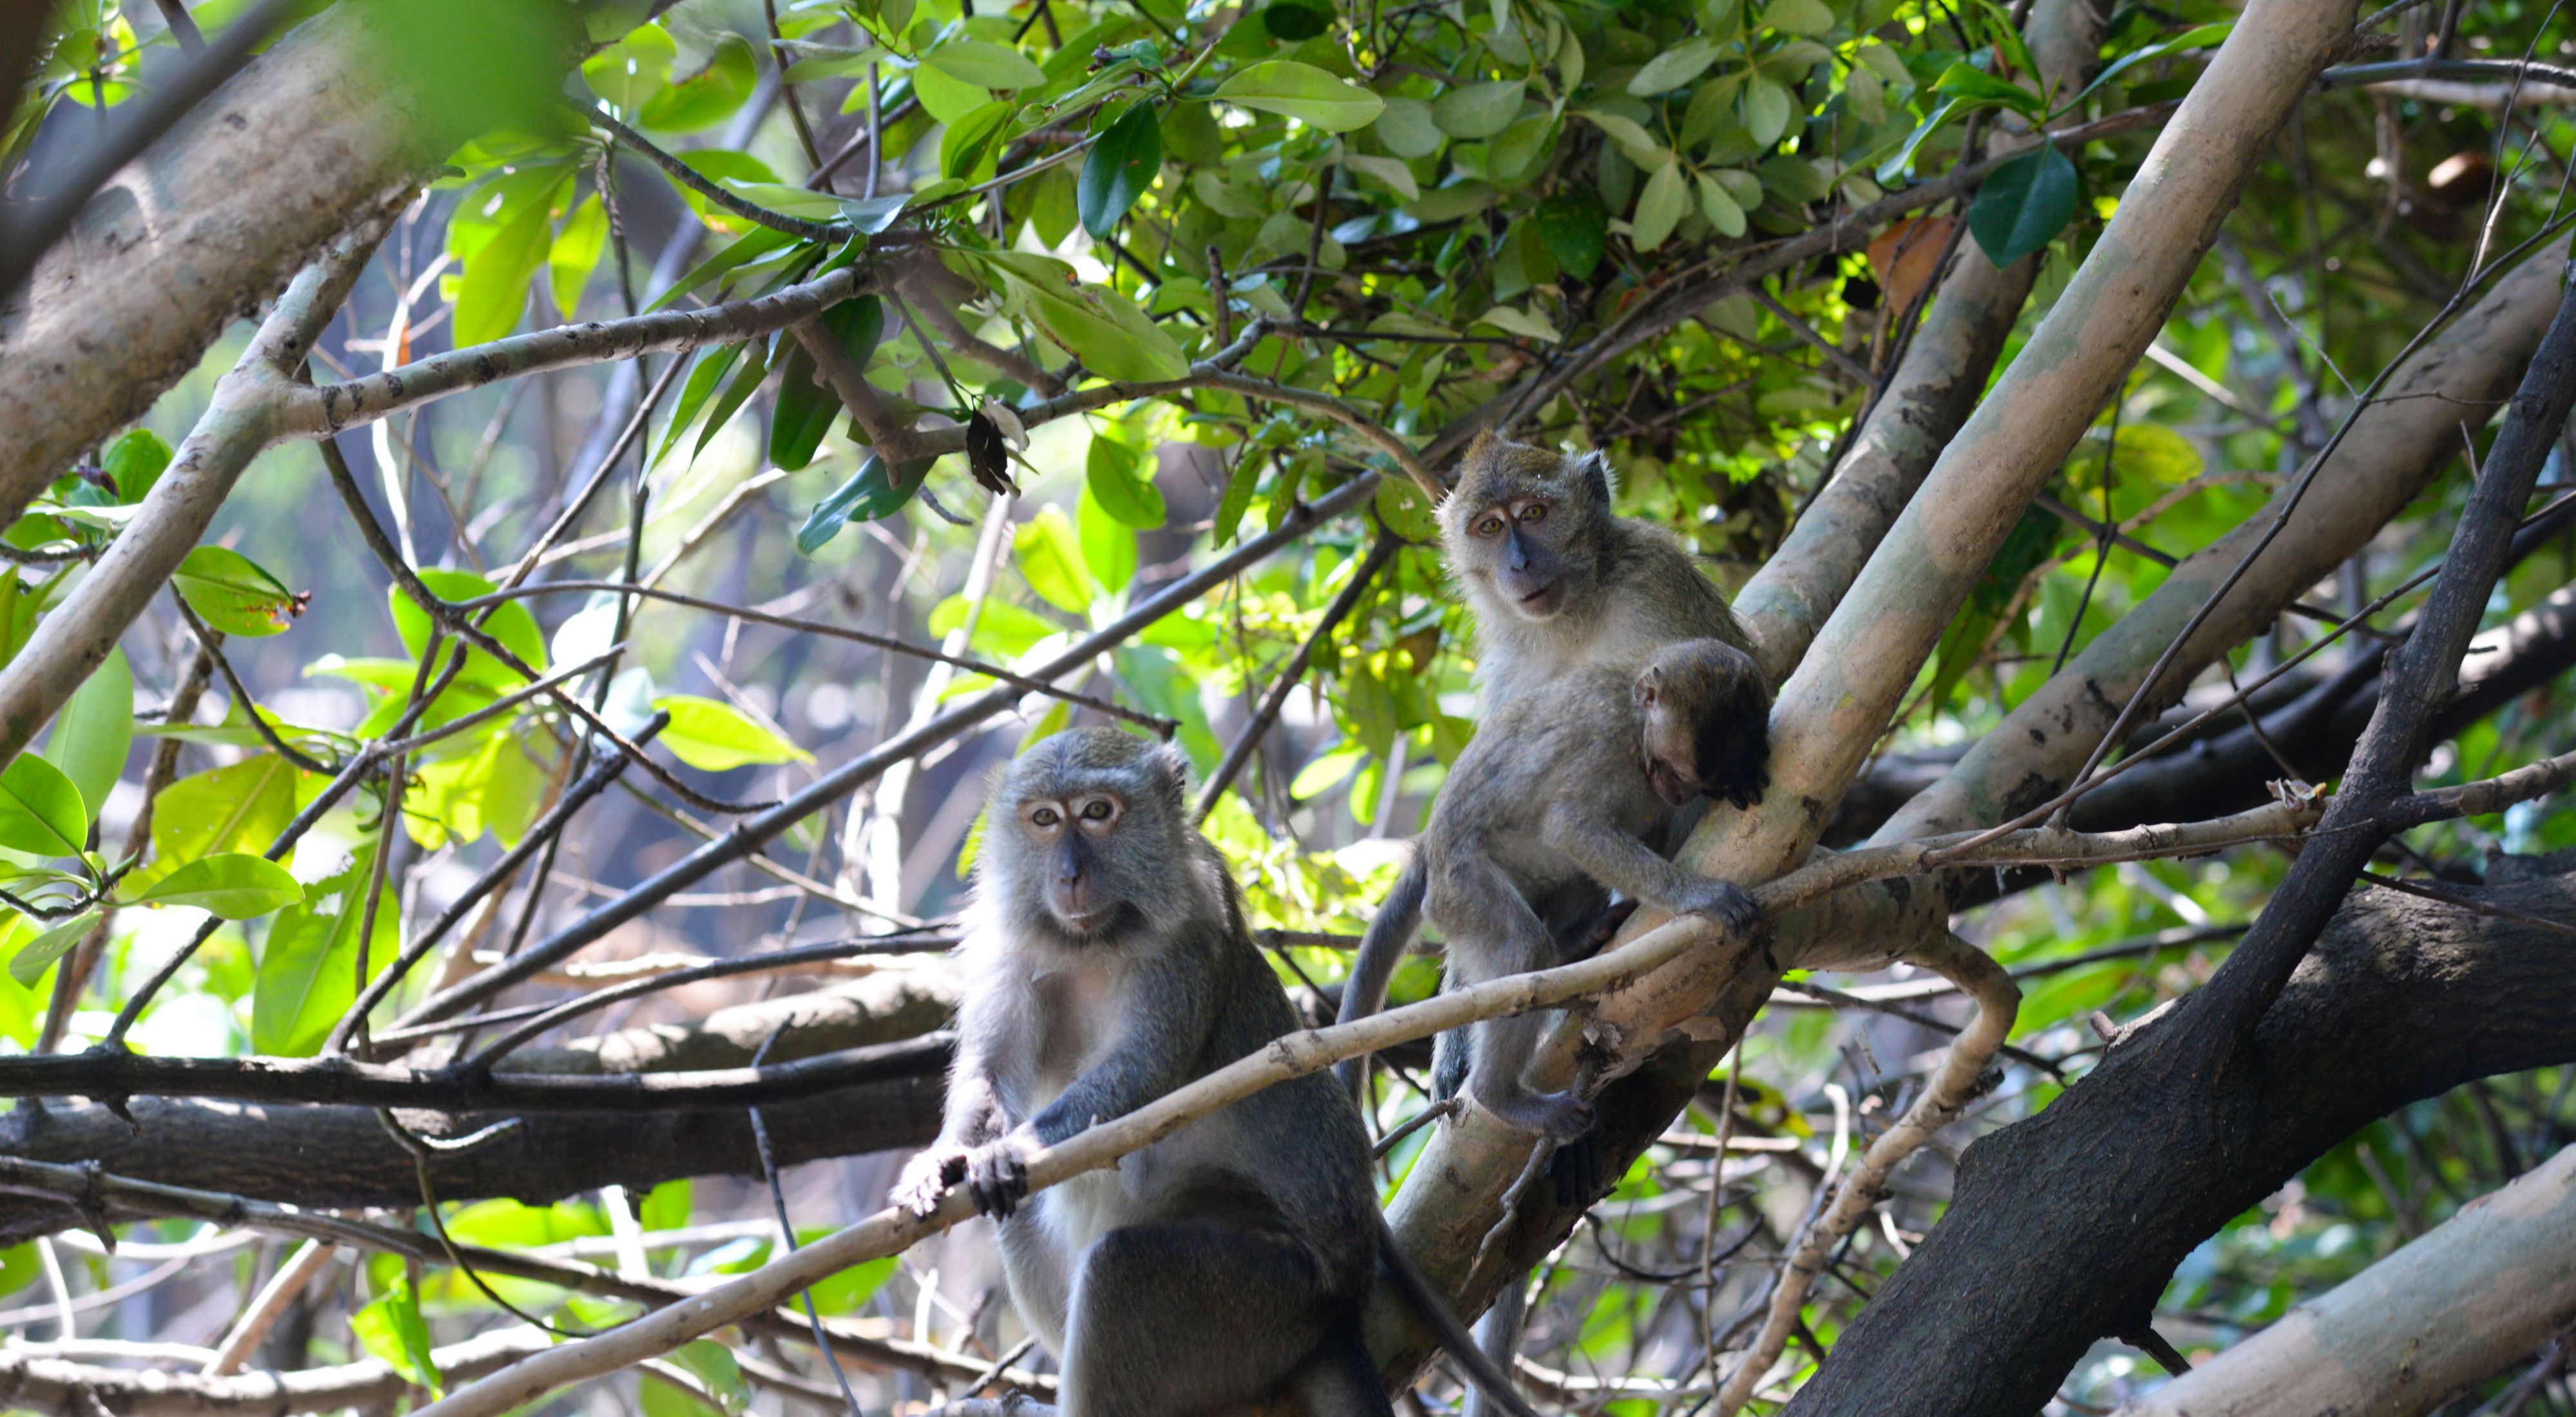 Monyet ekor panjang  bertengger di pepohonan mangrove